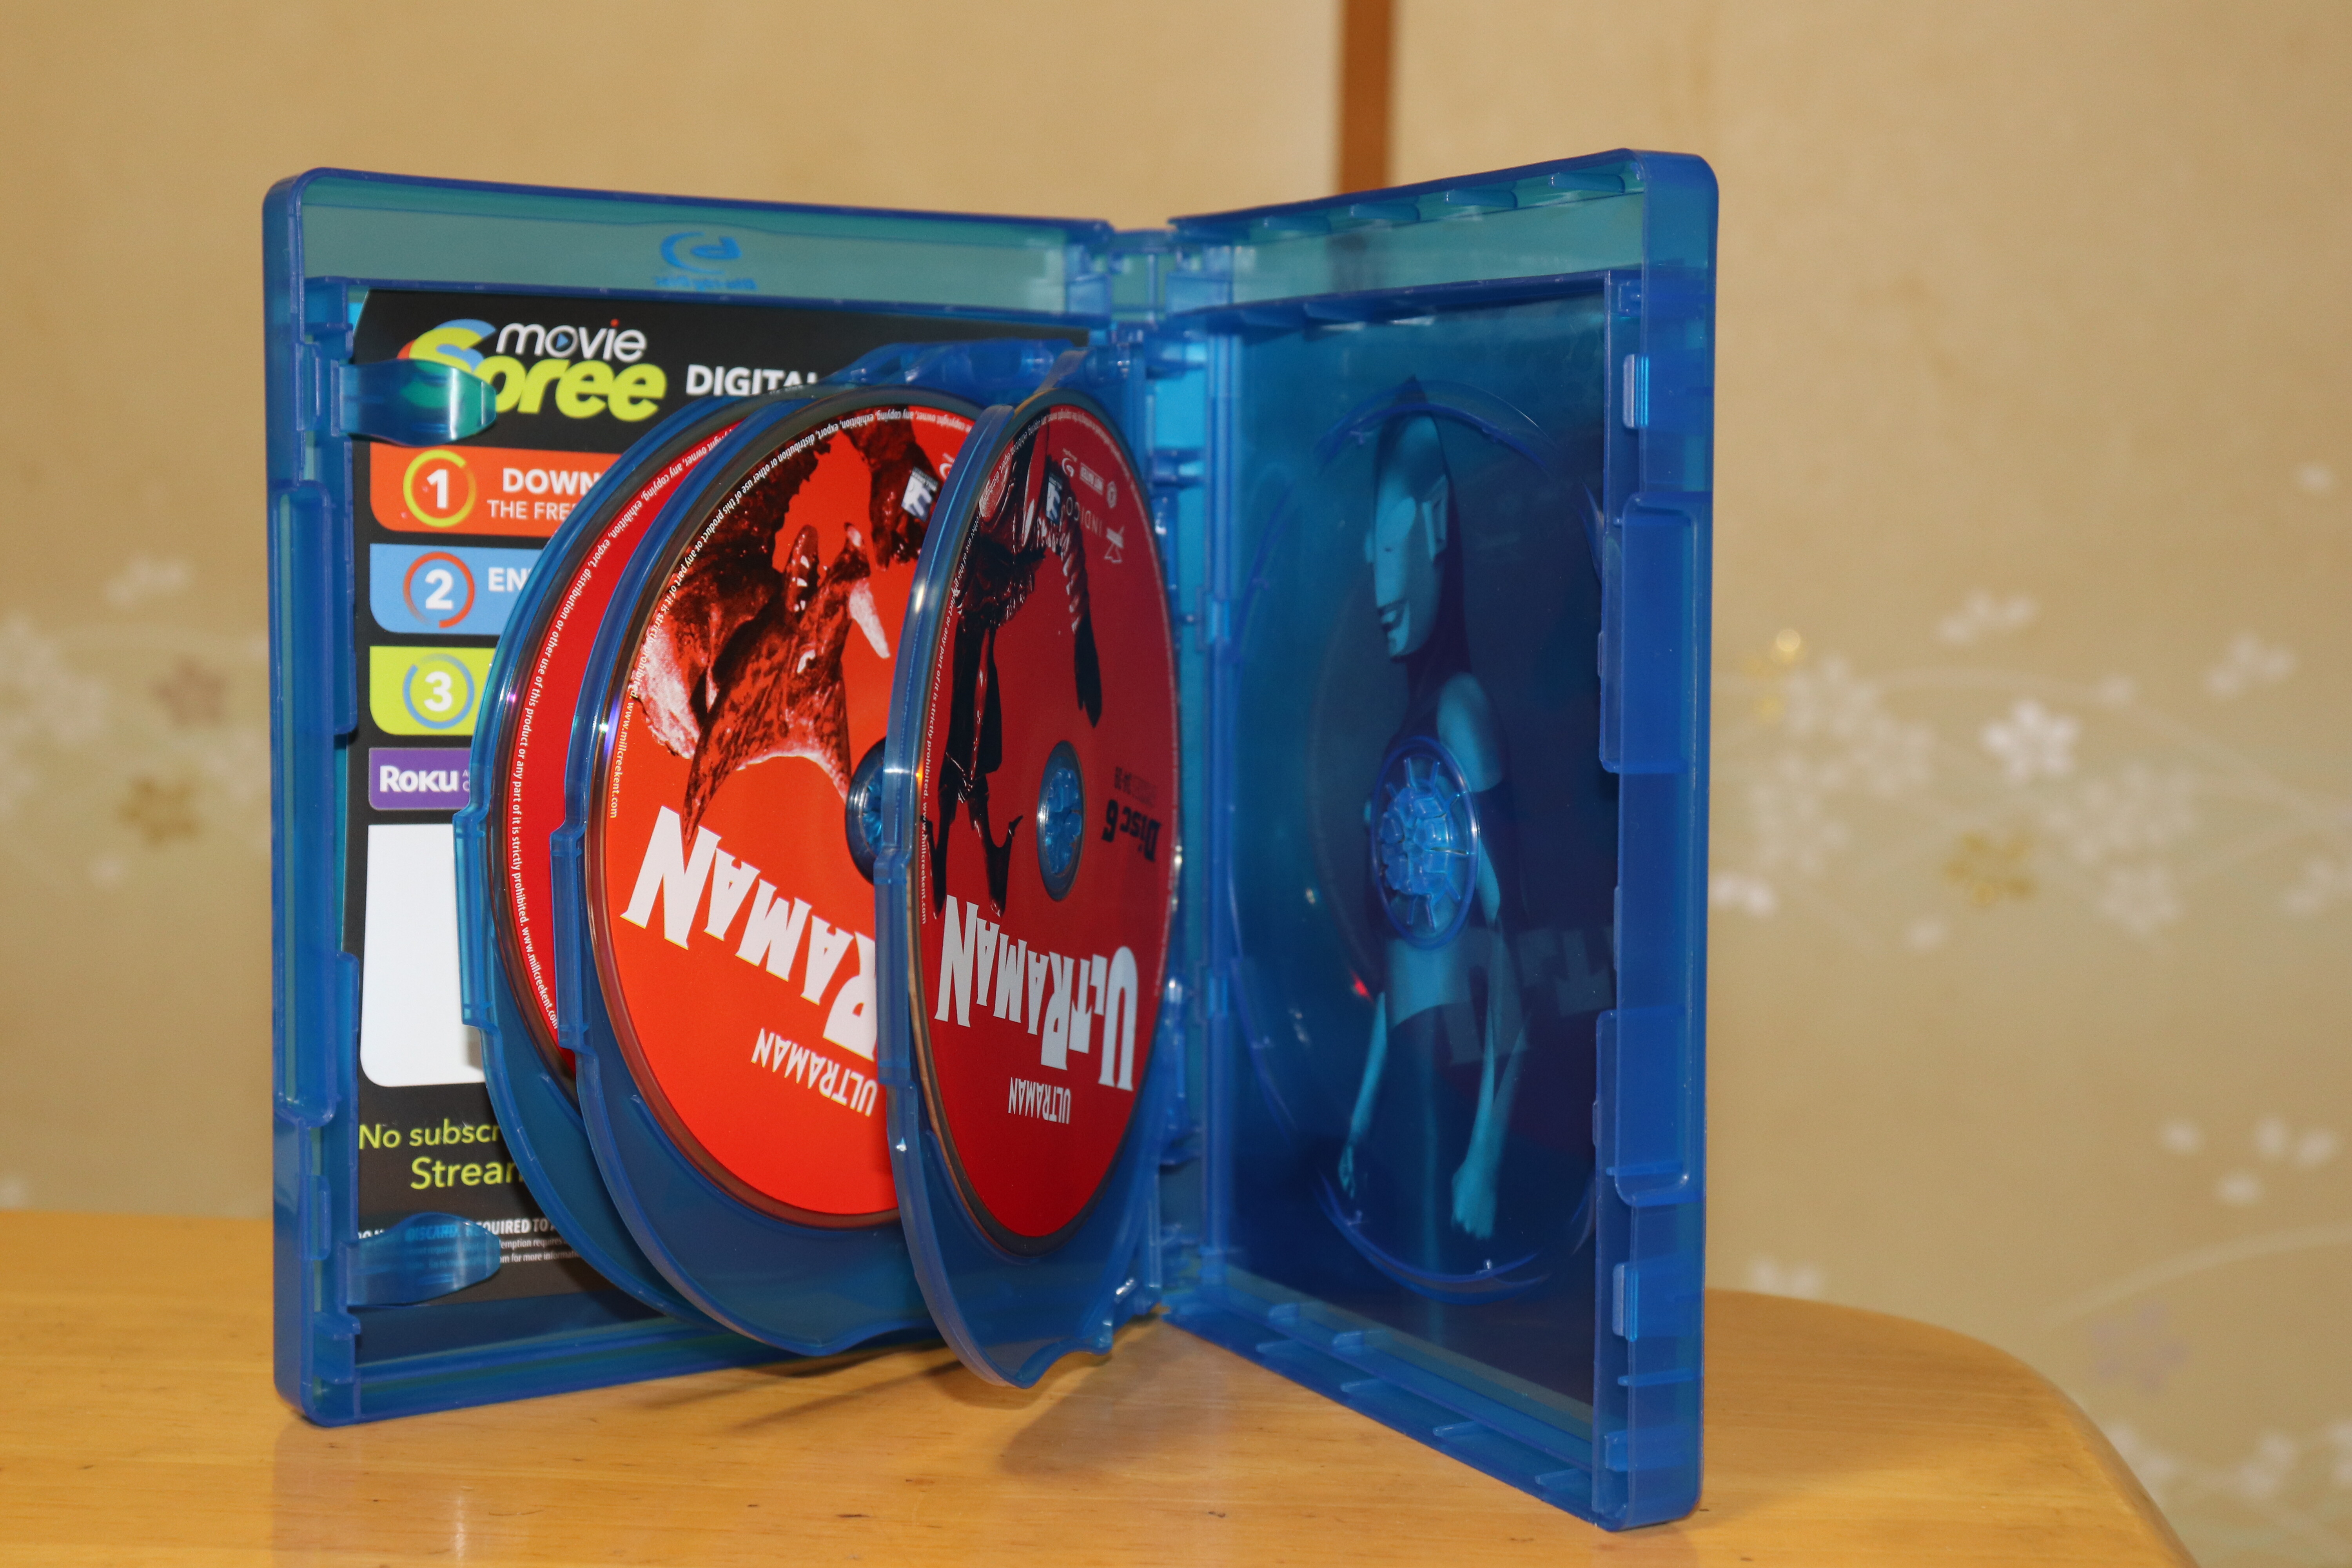 ウルトラマン Blu-ray Box Ⅰ Ⅱ Ⅲセット 数量限定セール